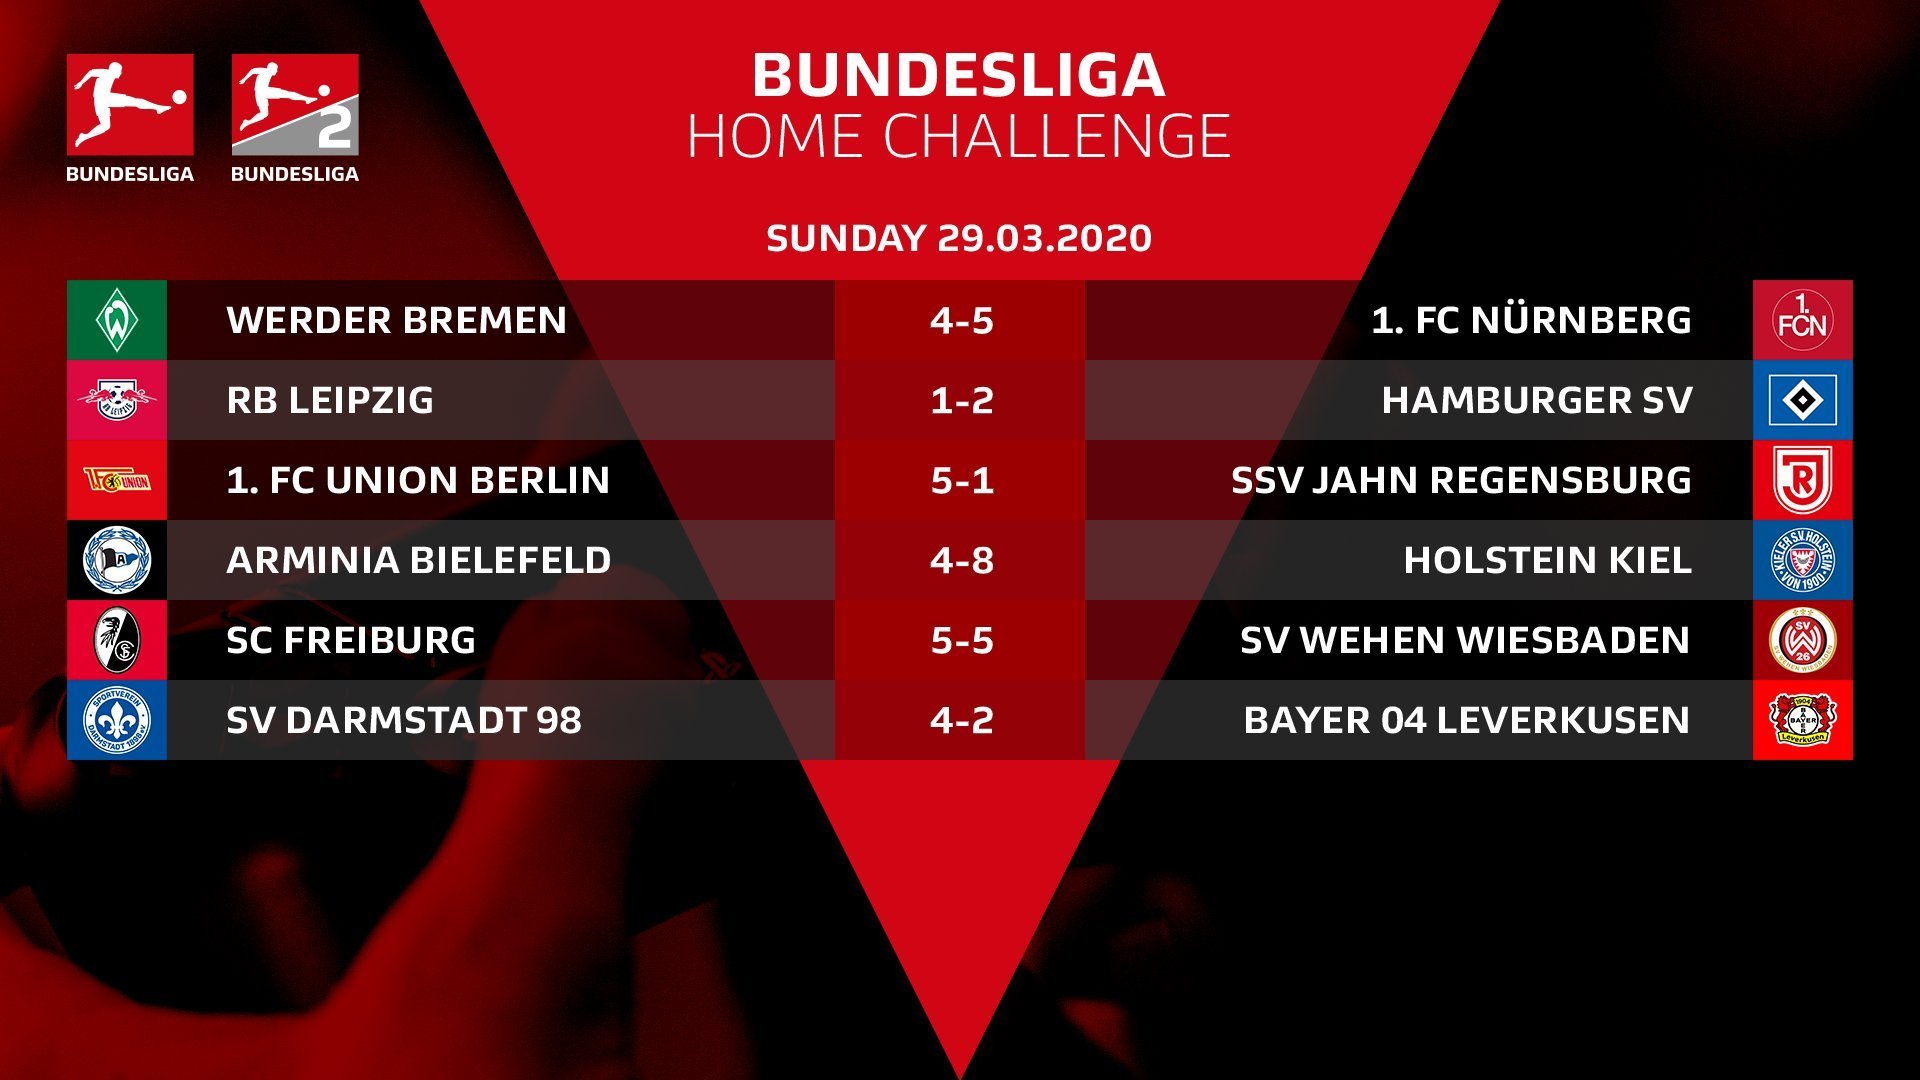 Киберфутбол. FIFA 20. Чемпионат Германии. #BundesligaHomeChallenge: результаты второго игрового дня - изображение 1